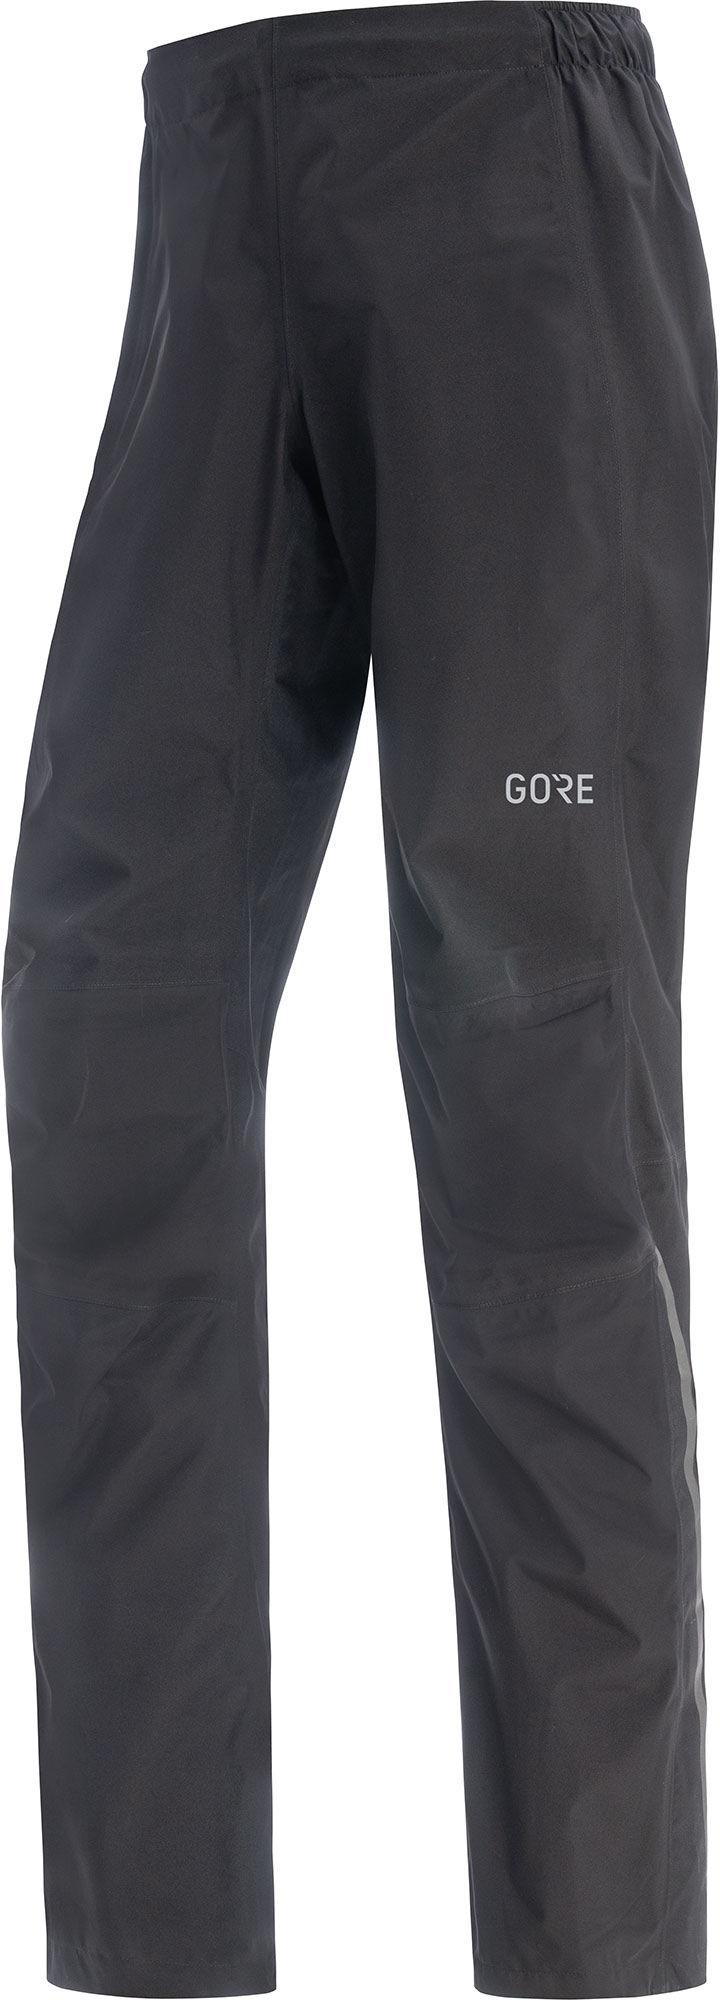 Gorewear Goretex Paclite Pants  Black